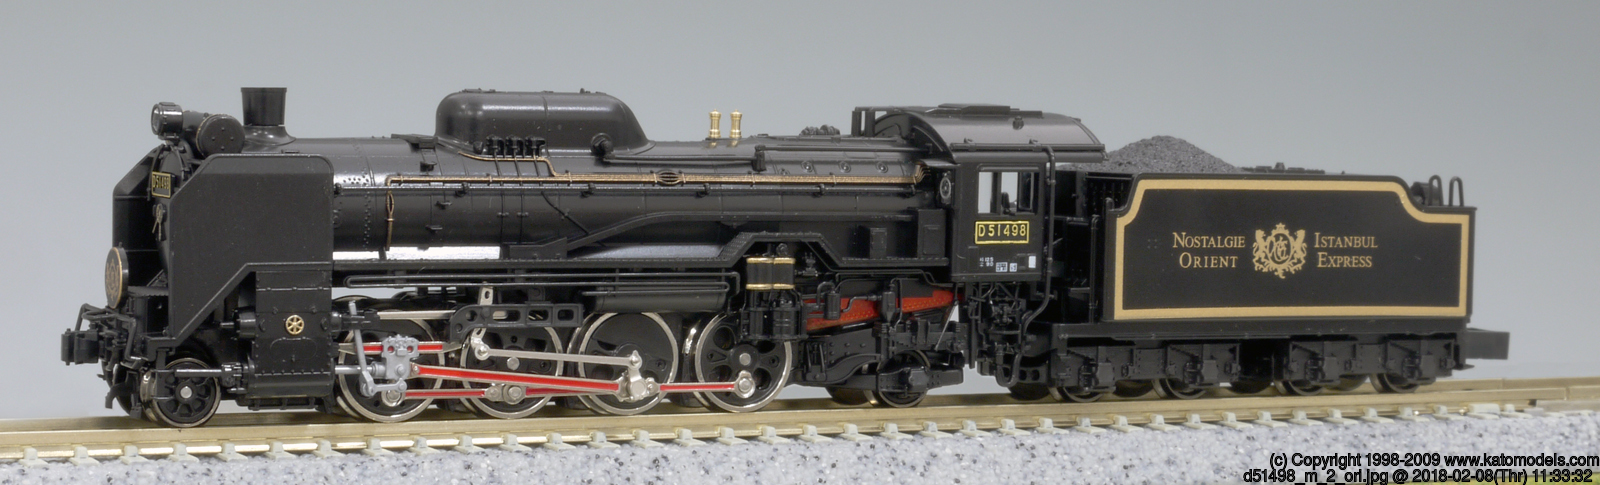 KATO 2016-2 D51-498 オリエントエクスプレス88 鉄道模型 Nゲージ